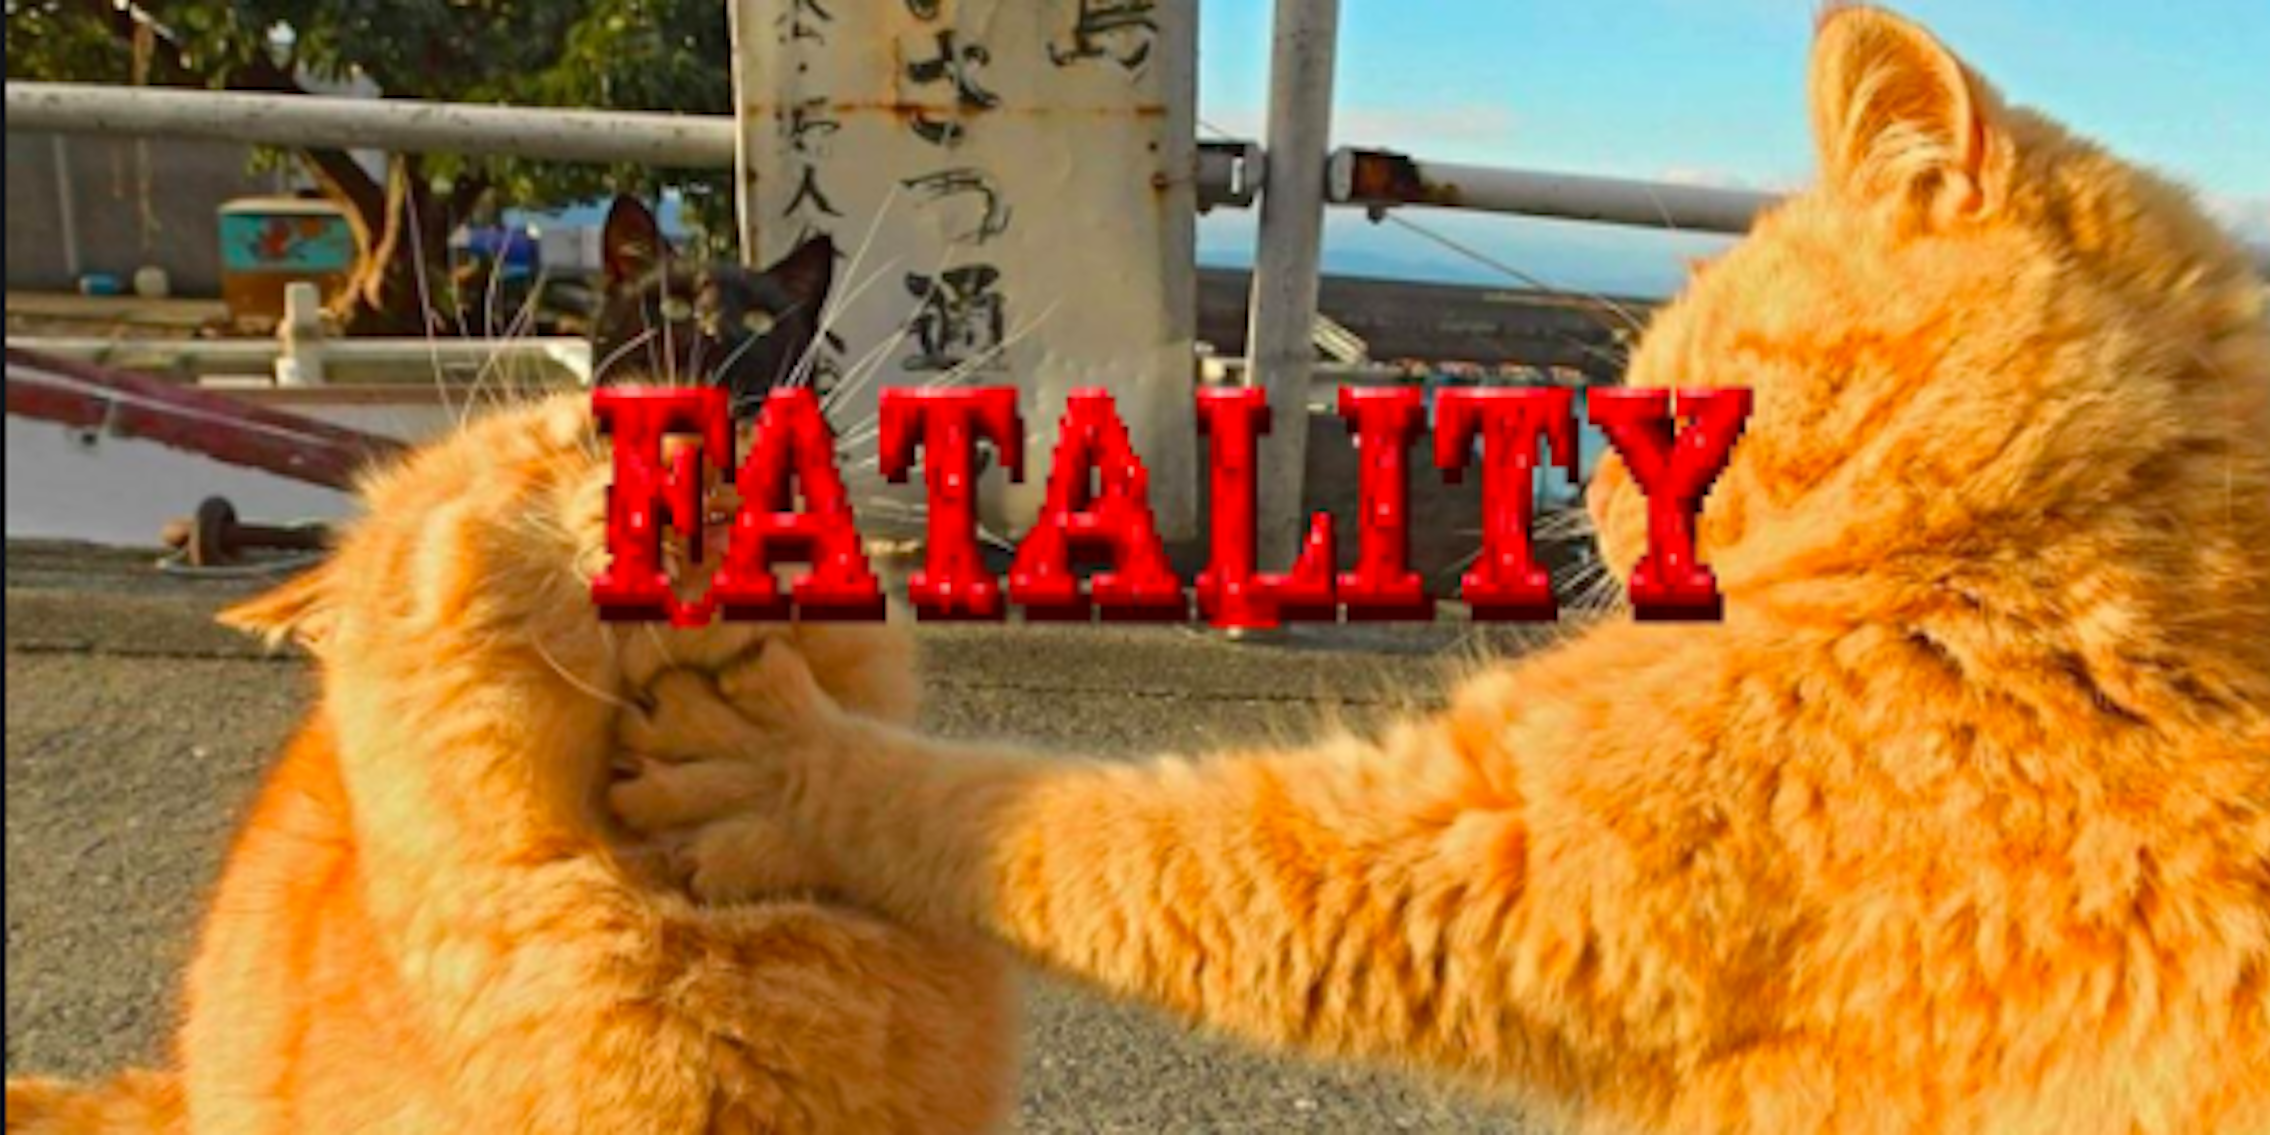 cat battle photoshop battle